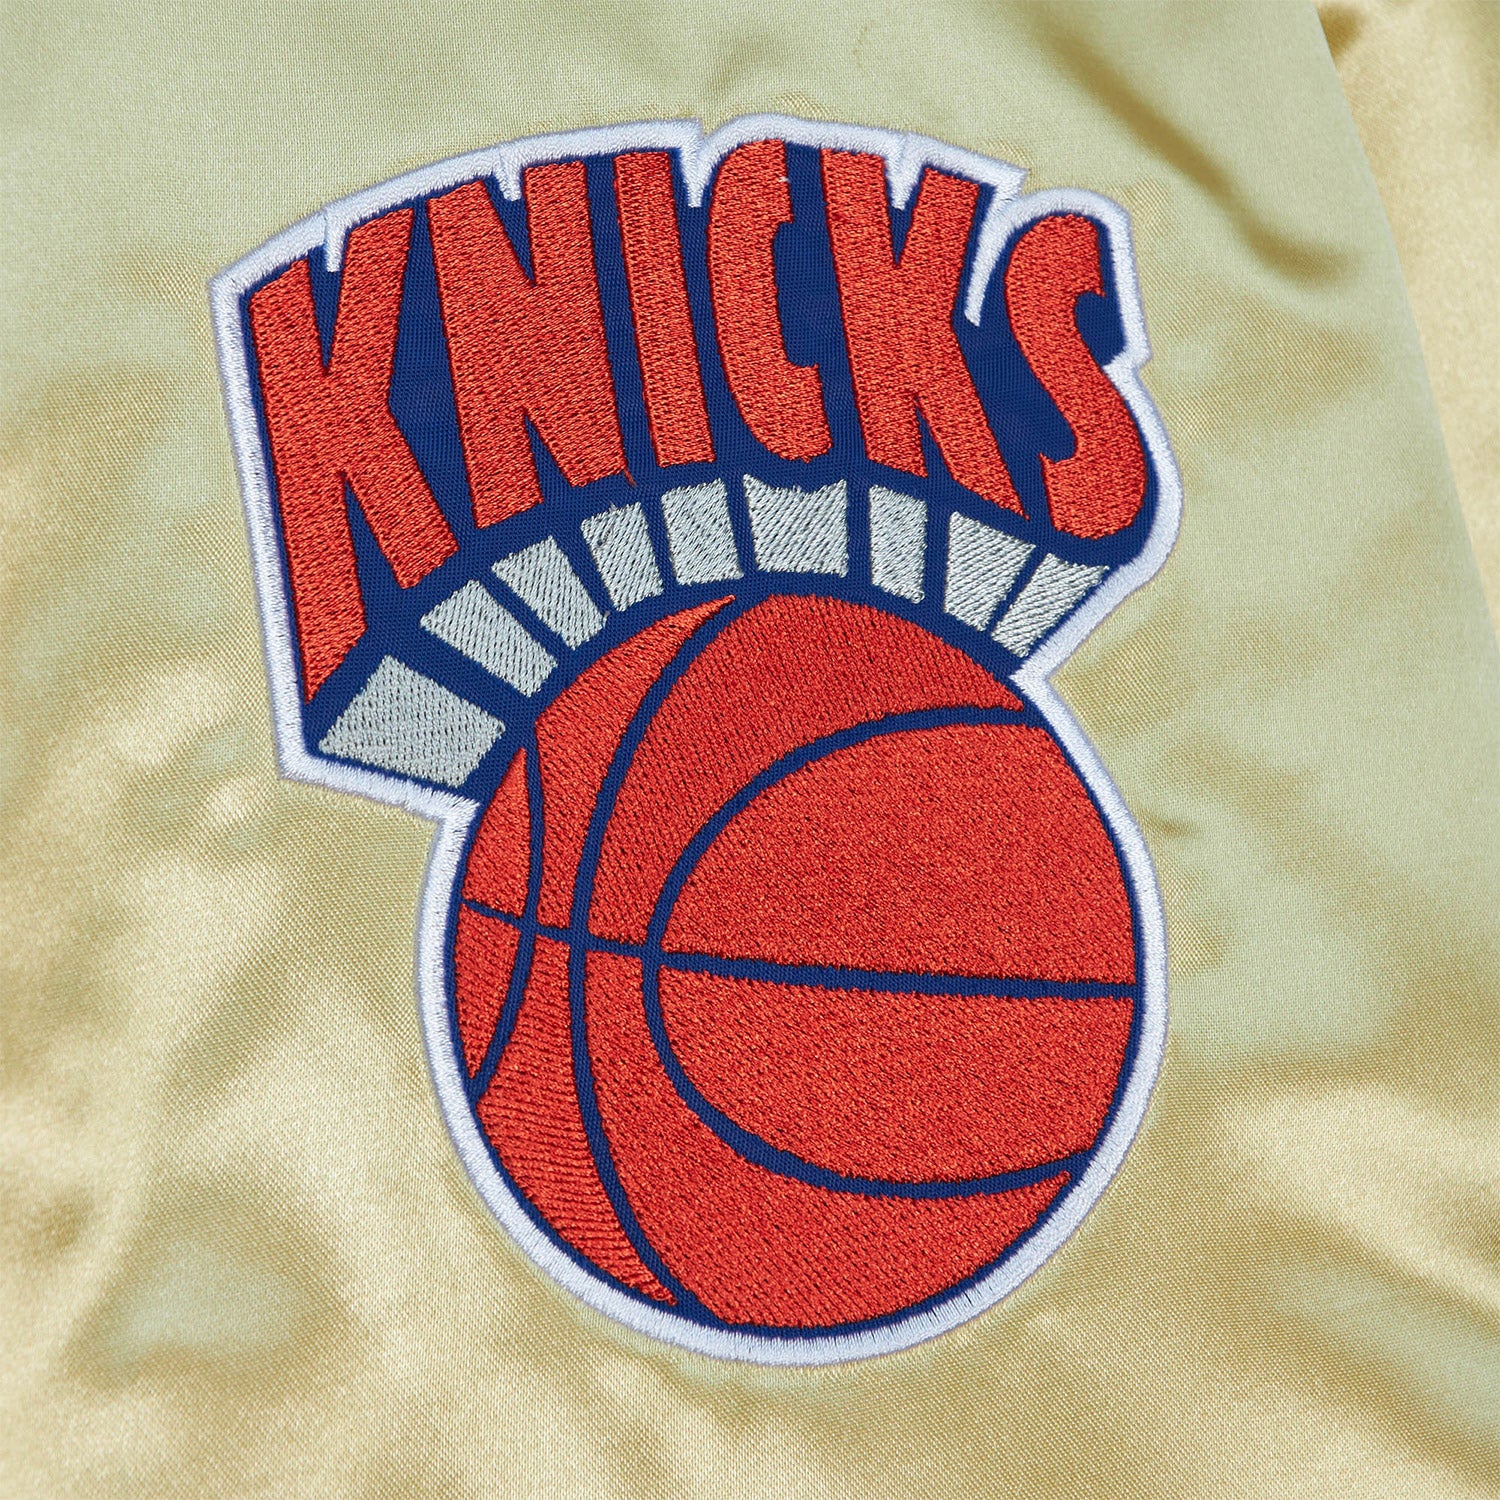 Mitchell & Ness Knicks Big & Tall Gold Satin Jacket